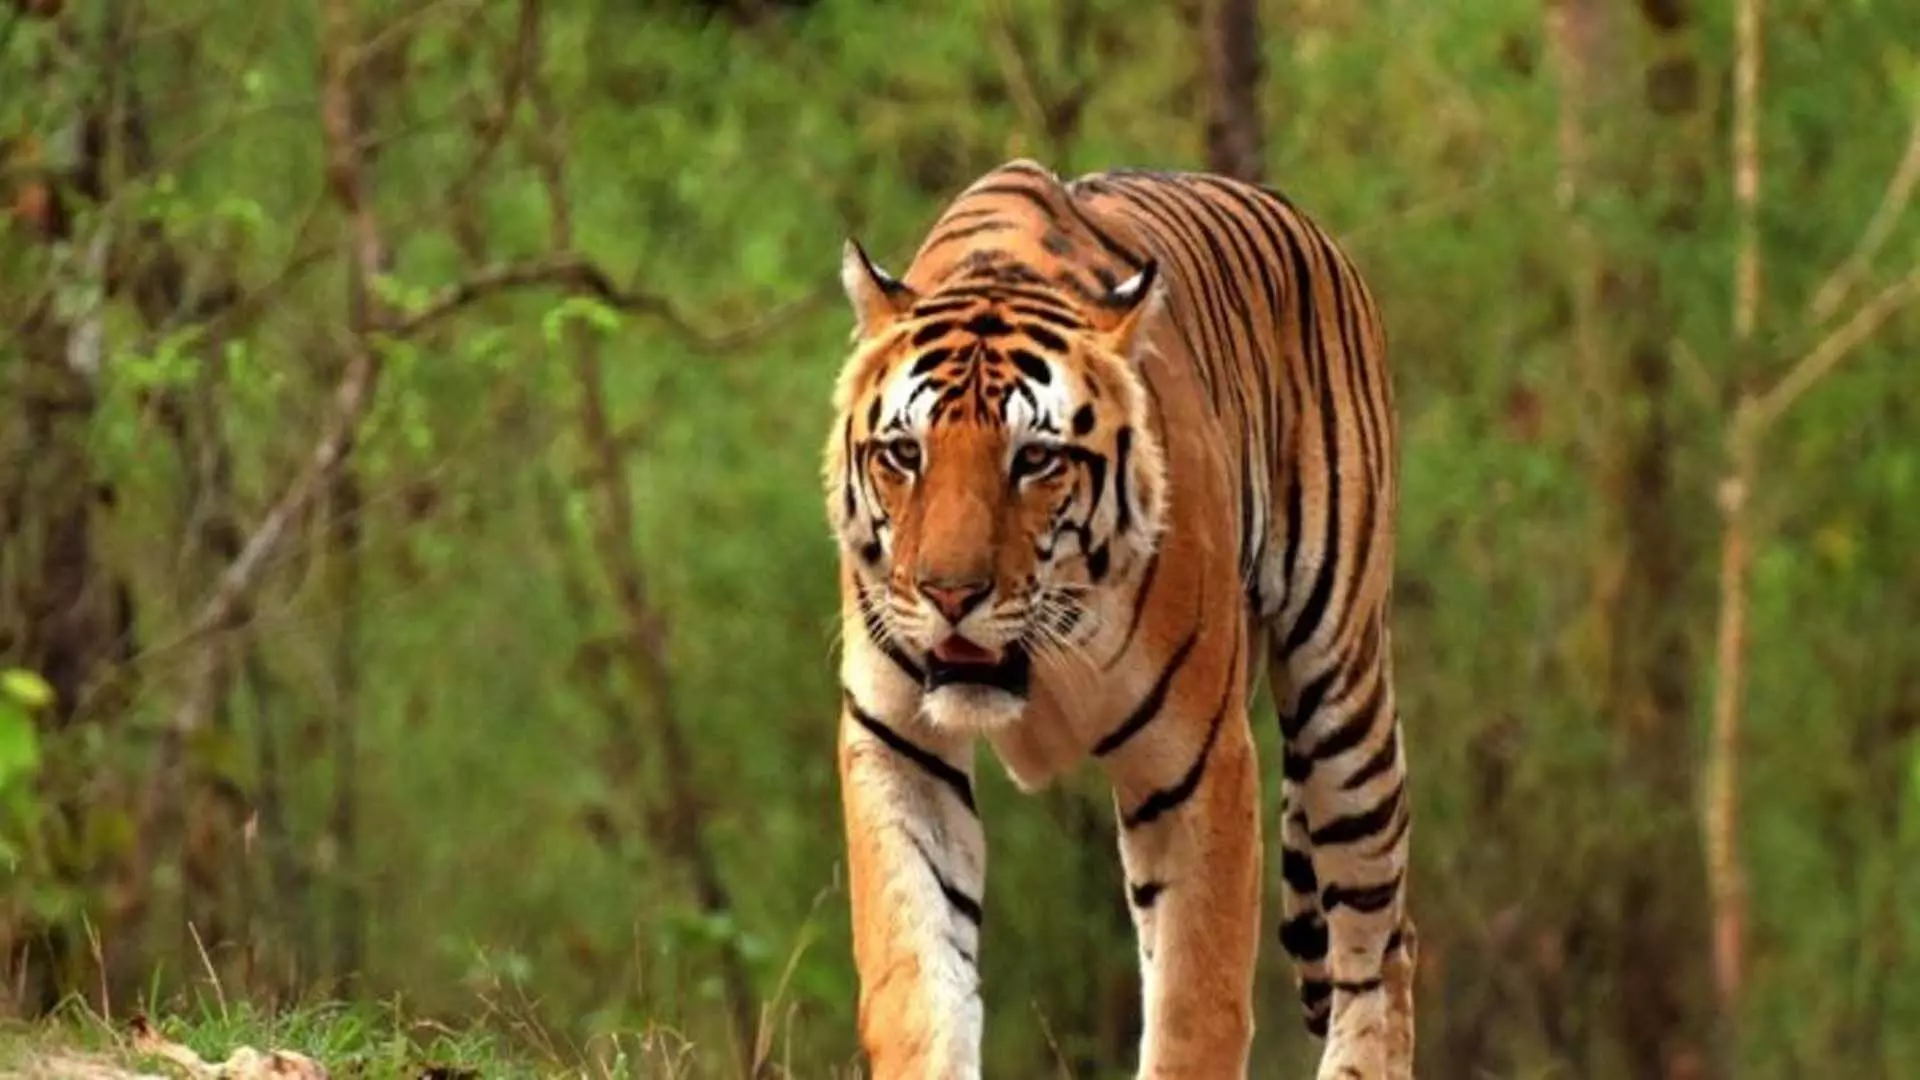 Odisha वन विभाग ने 17 मवेशियों को मारने वाले बाघ की तलाश में अभियान शुरू किया